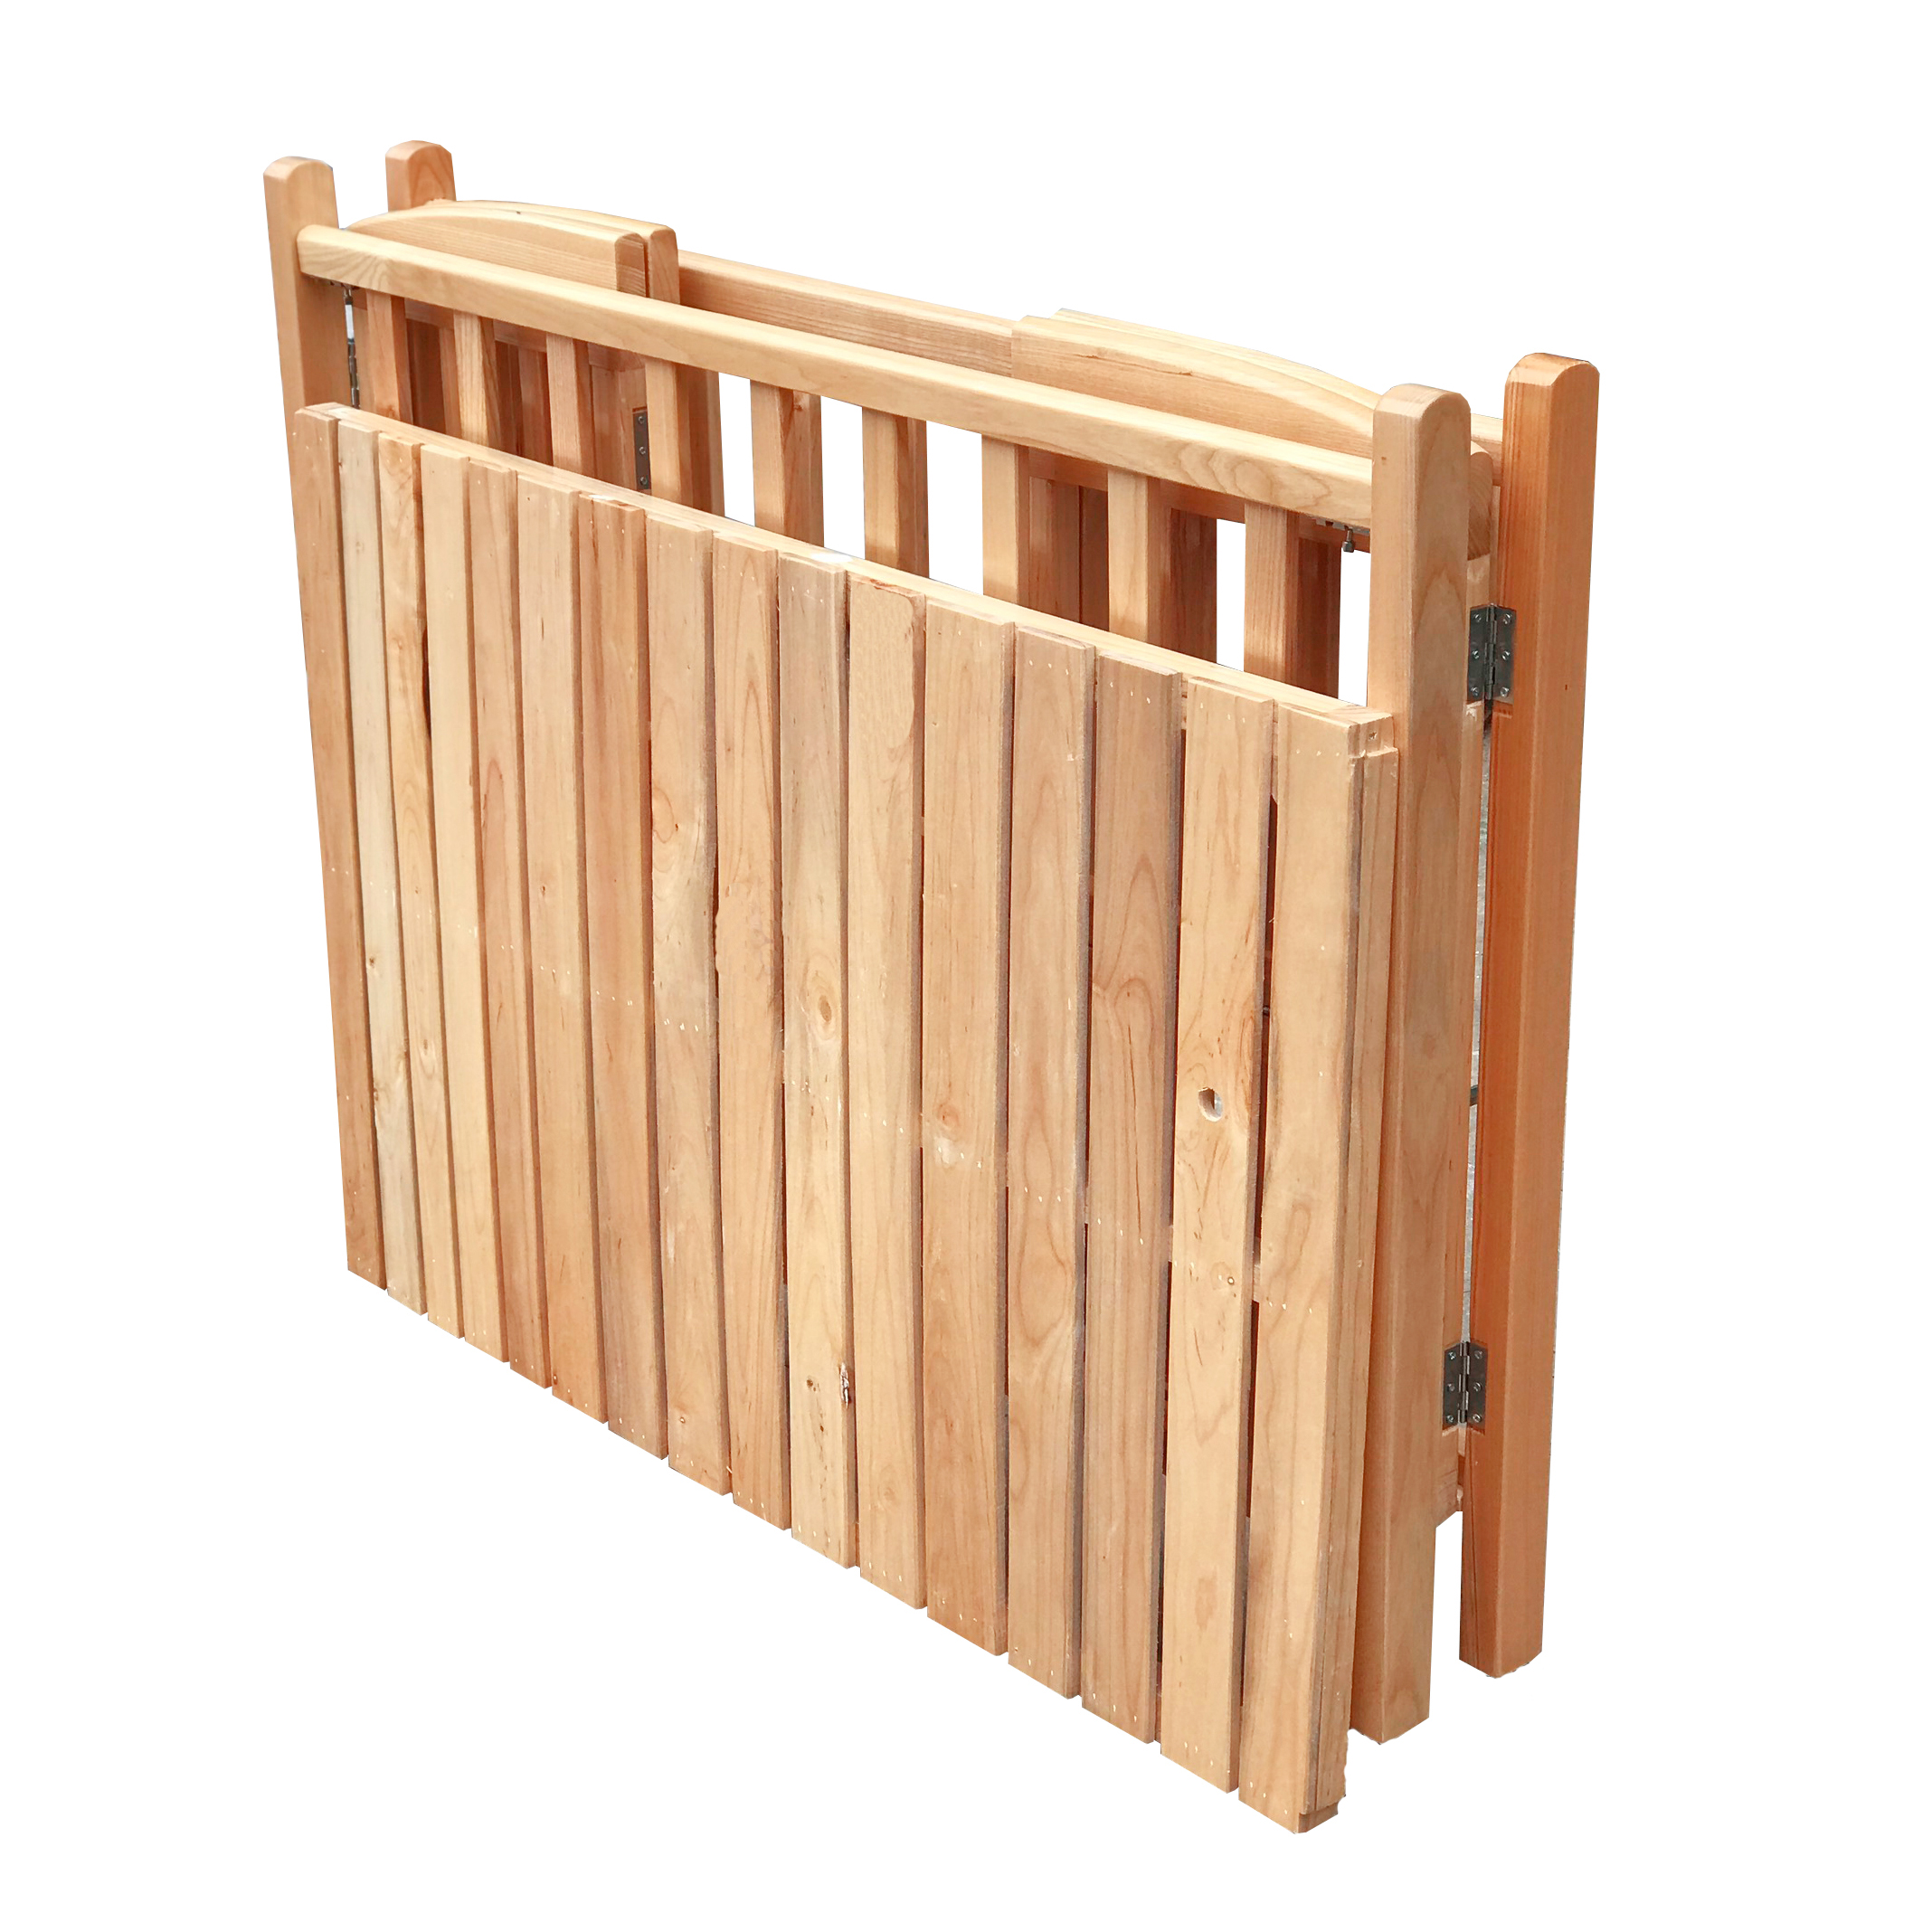 Cũi cho bé - Cũi trẻ em - Cũi giường bằng gỗ 